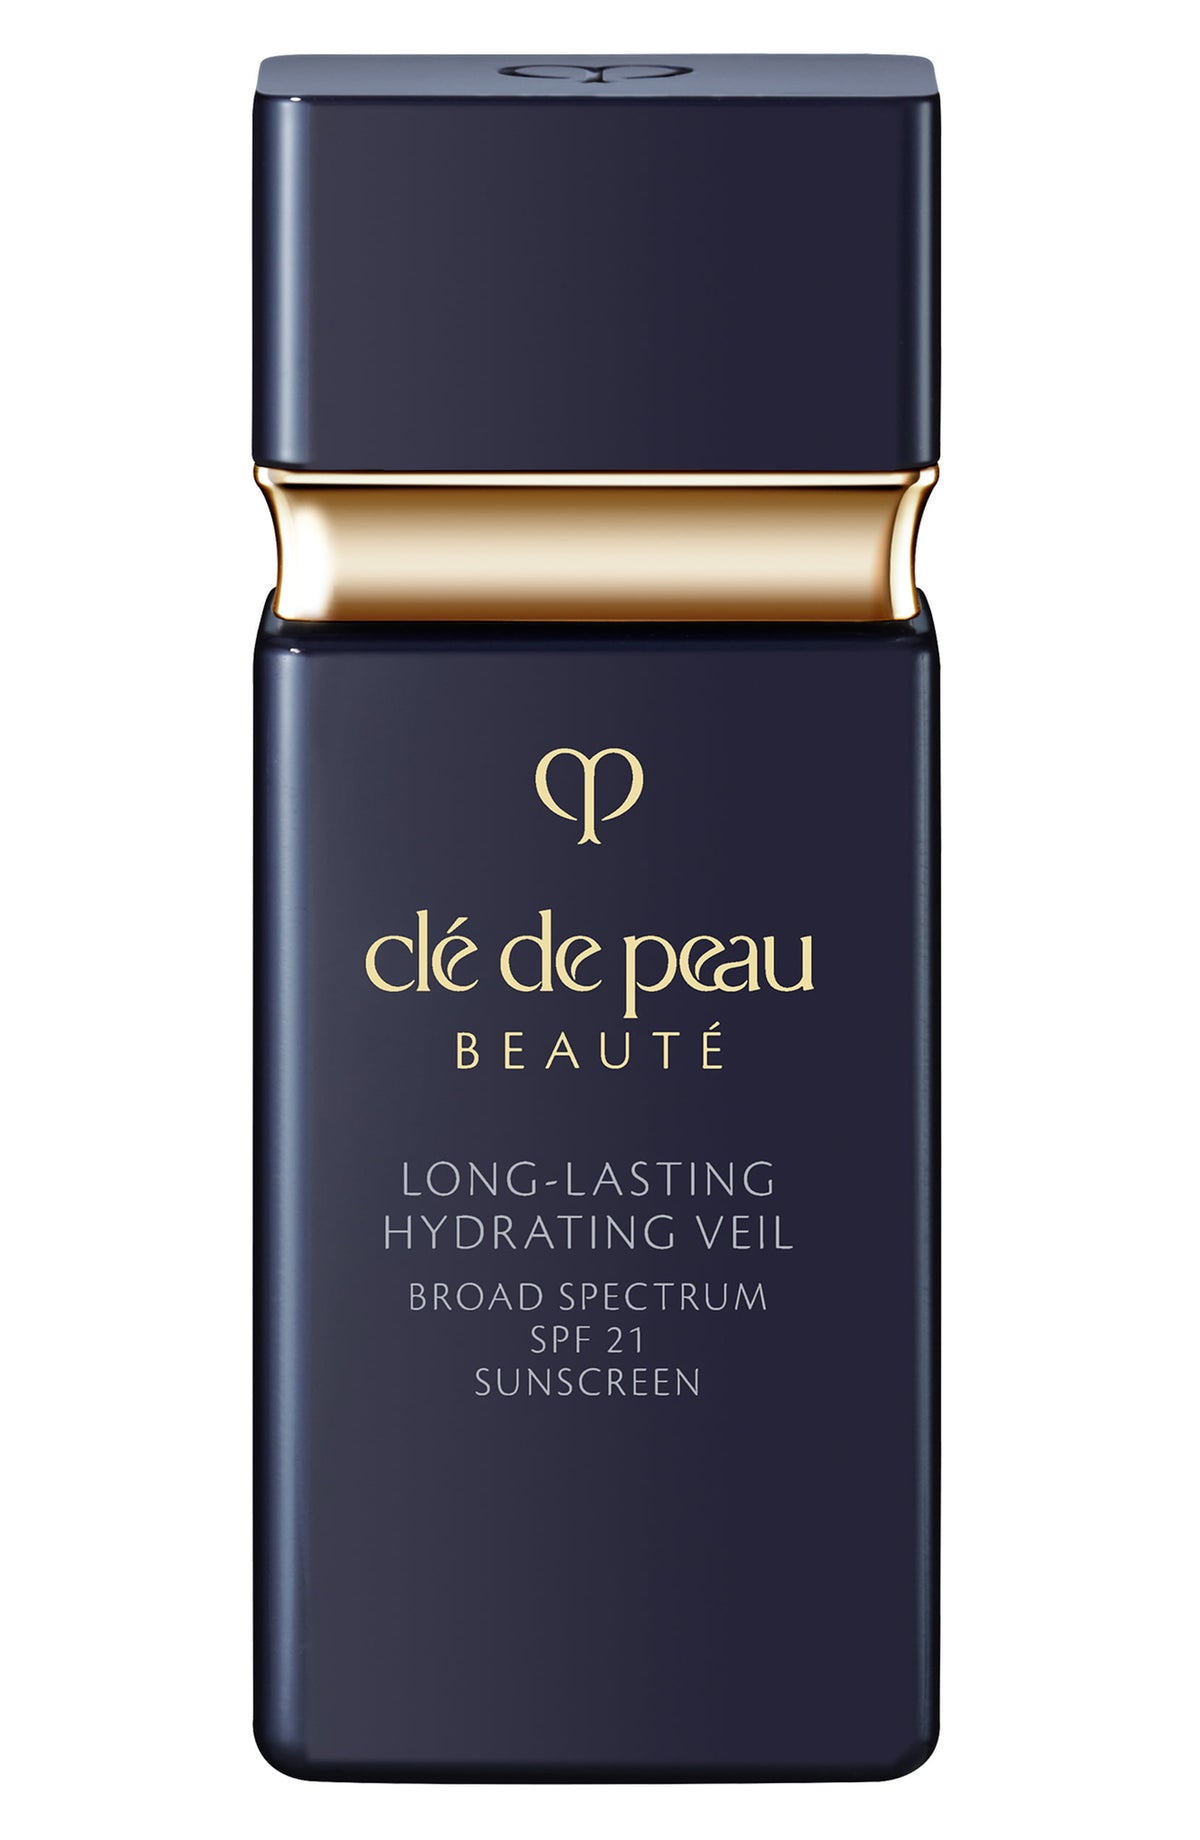 Clé de Peau Beauté Long-Lasting Hydrating Veil SPF 21